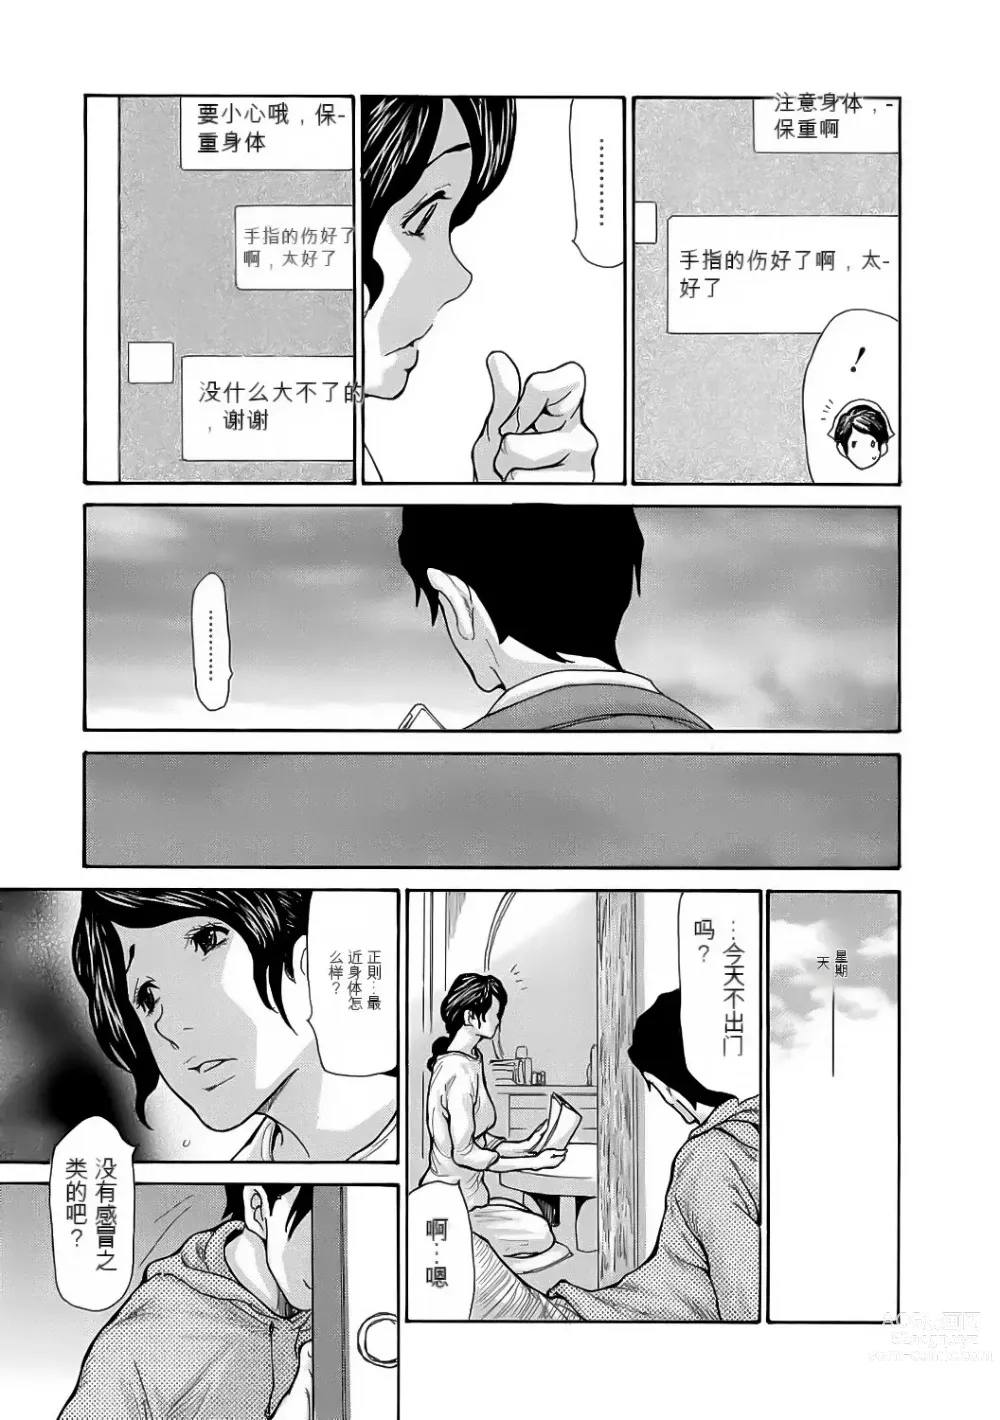 Page 159 of manga Haha wa Onna de Aru 1-8